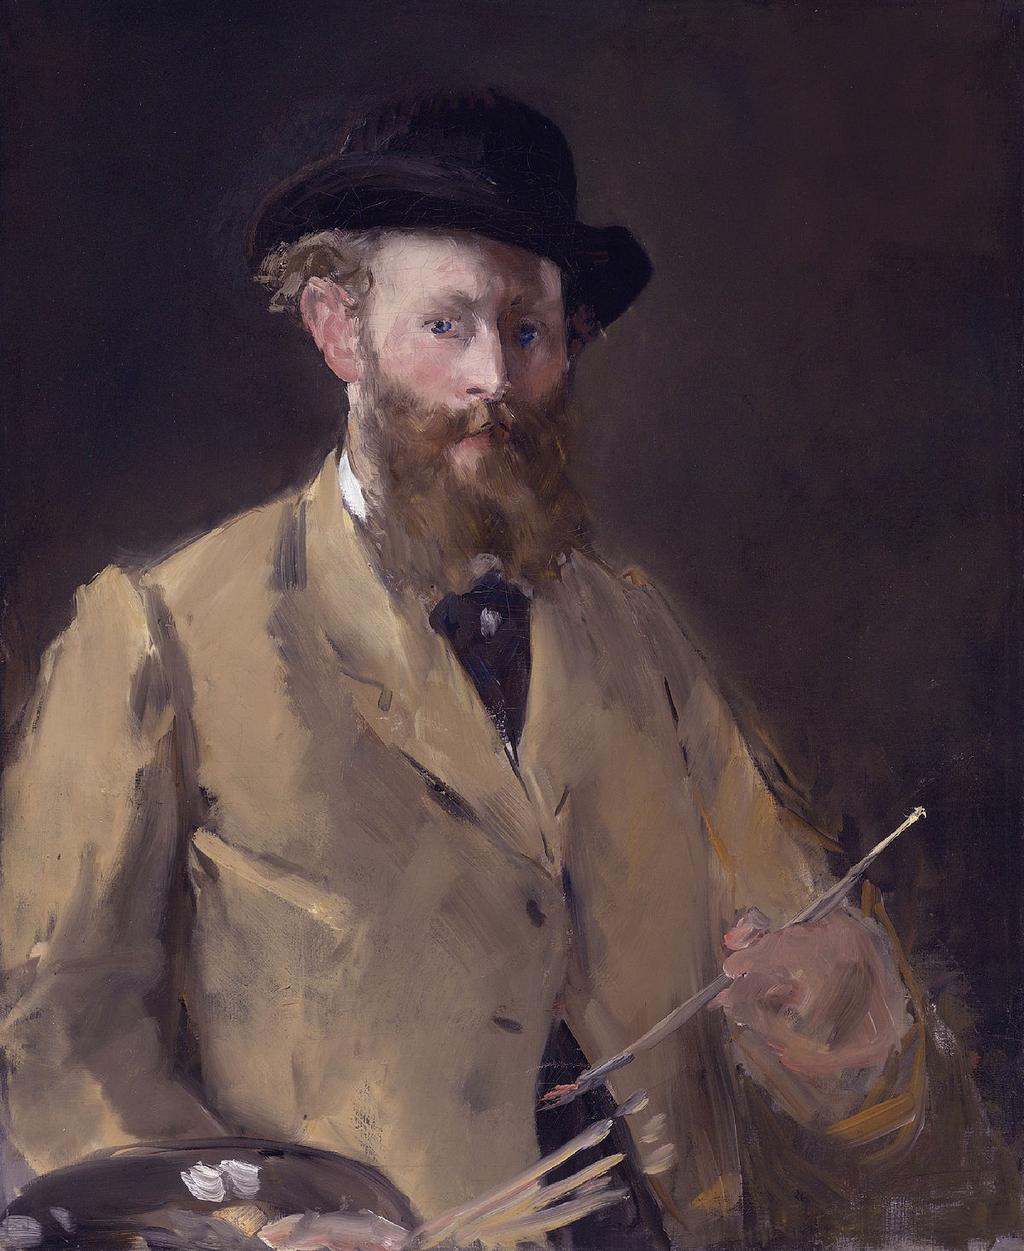 Édouard Manet- Un peintre entre modernité et tradition? Édouard Manet, né le 23 janvier 1832 à Paris, est considéré comme un des peintres et graveurs français majeurs de la fin du XIXᵉ siècle.